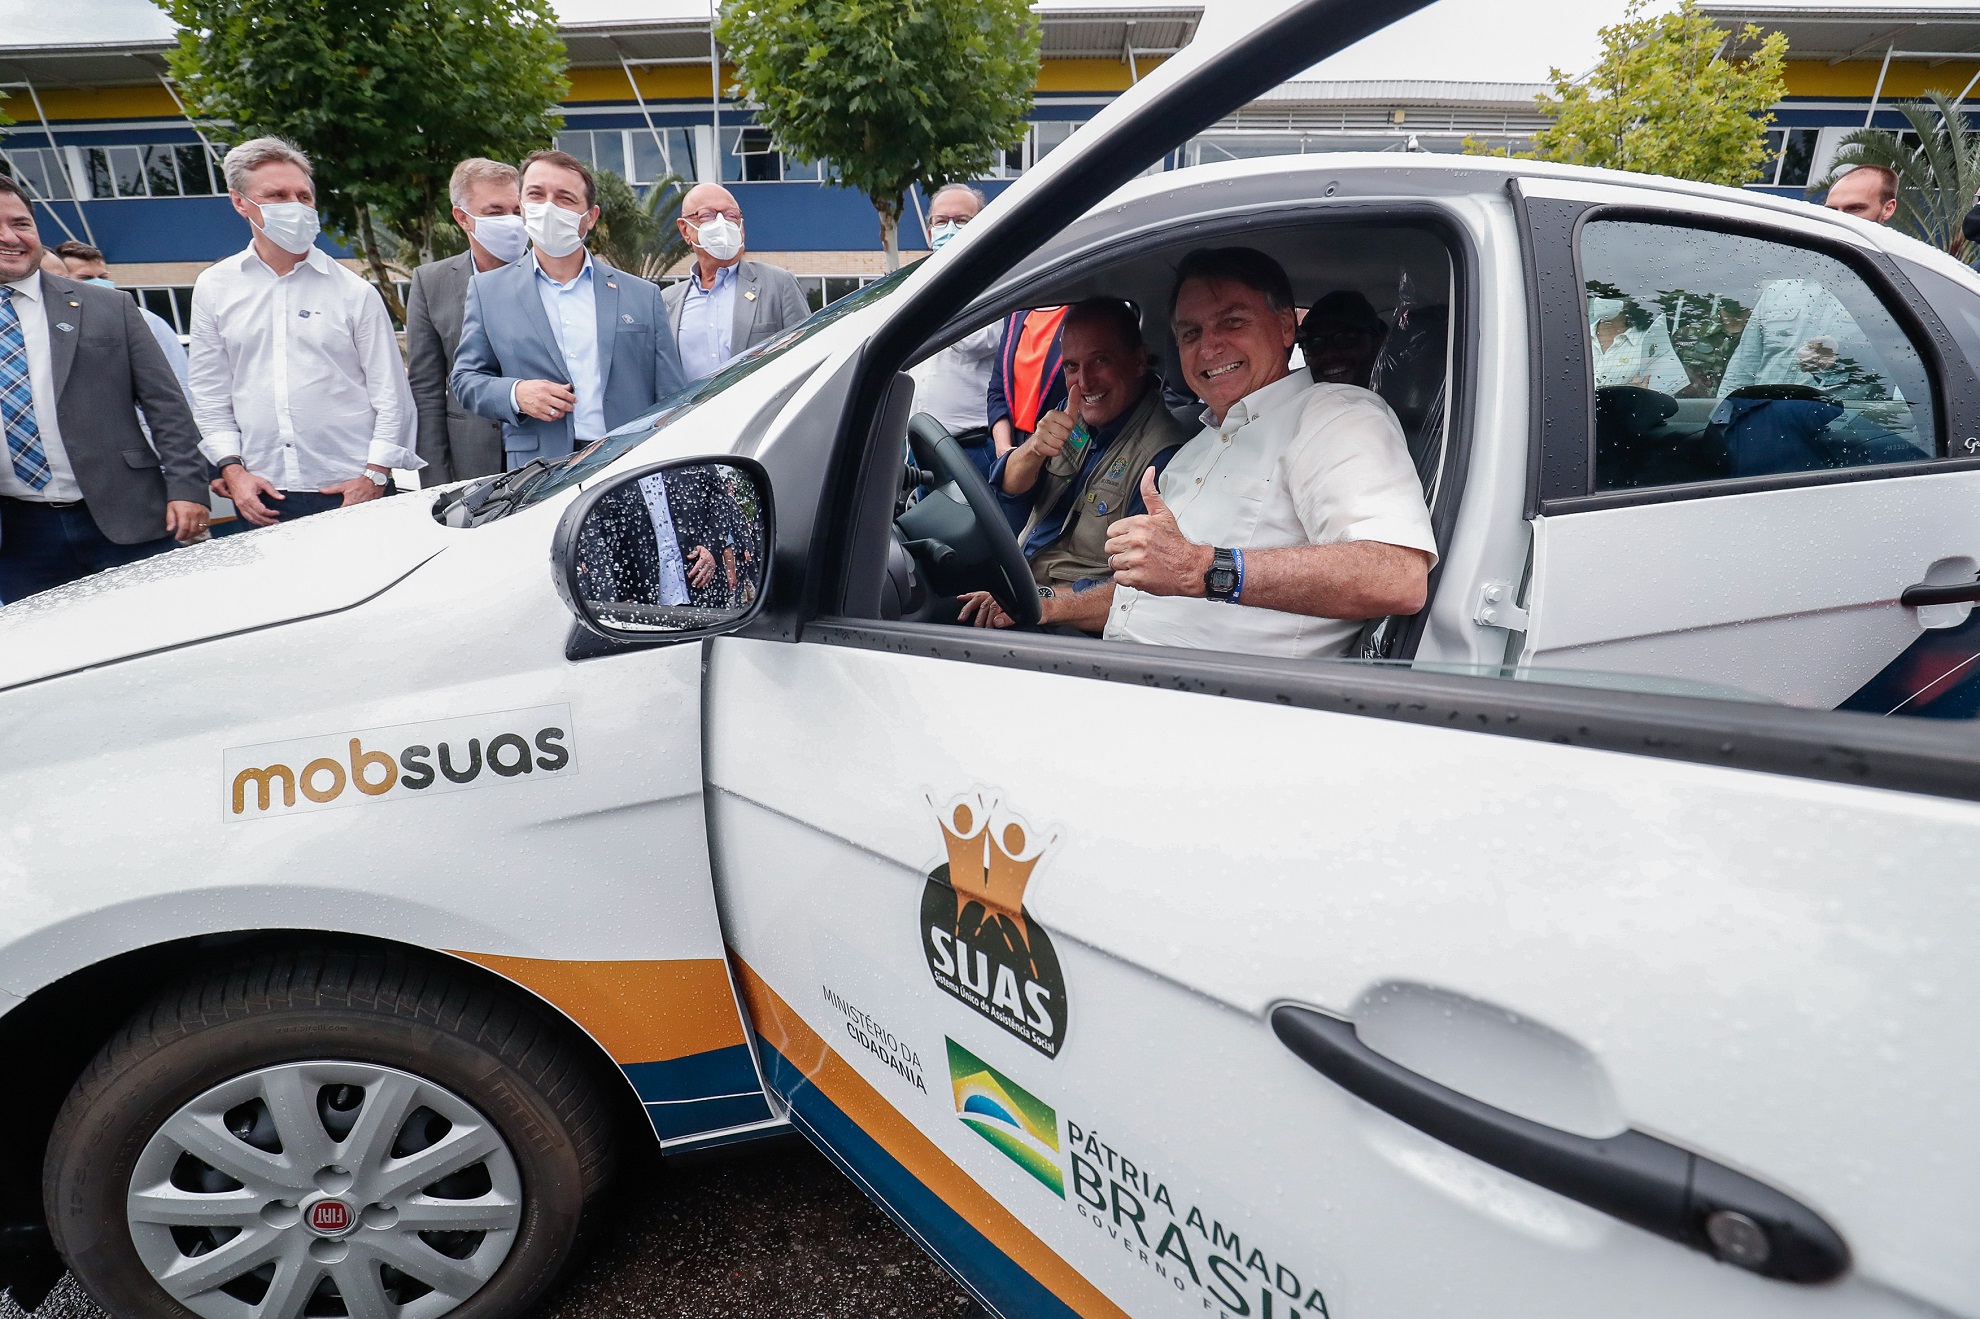 (Florianópolis - SC, 04/02/2021) Presidente da República Jair Bolsonaro, posa para fotos com motoristas e inspeciona automóveis do sistema MOBSUAS.Foto: Alan Santos/PR